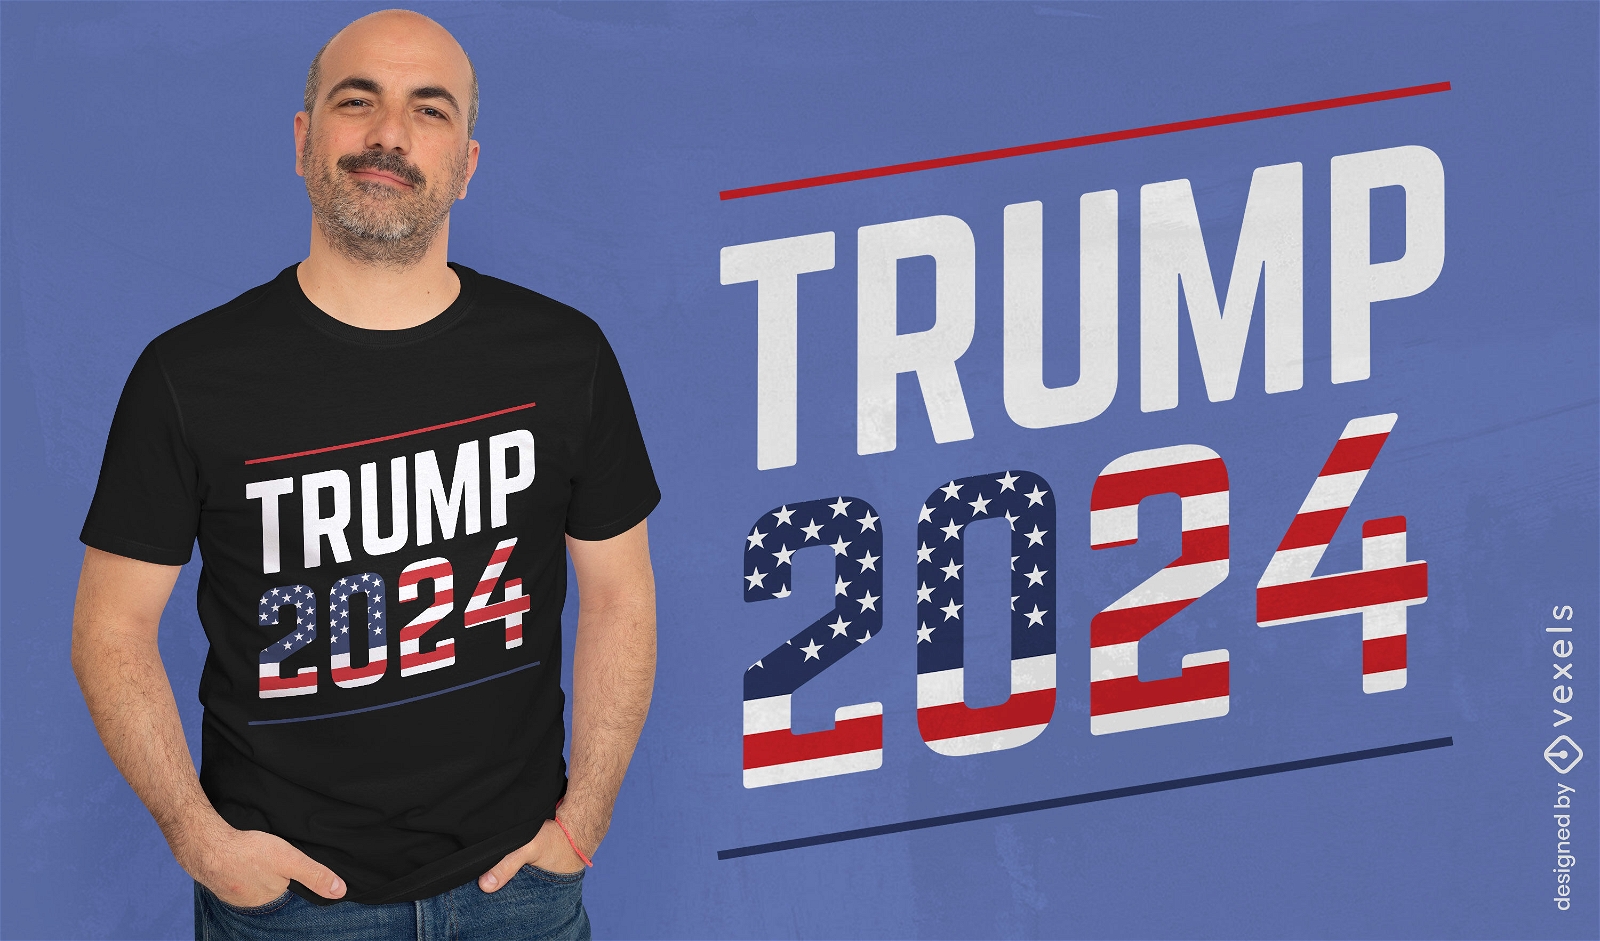 Trump 2024 elections t-shirt design 